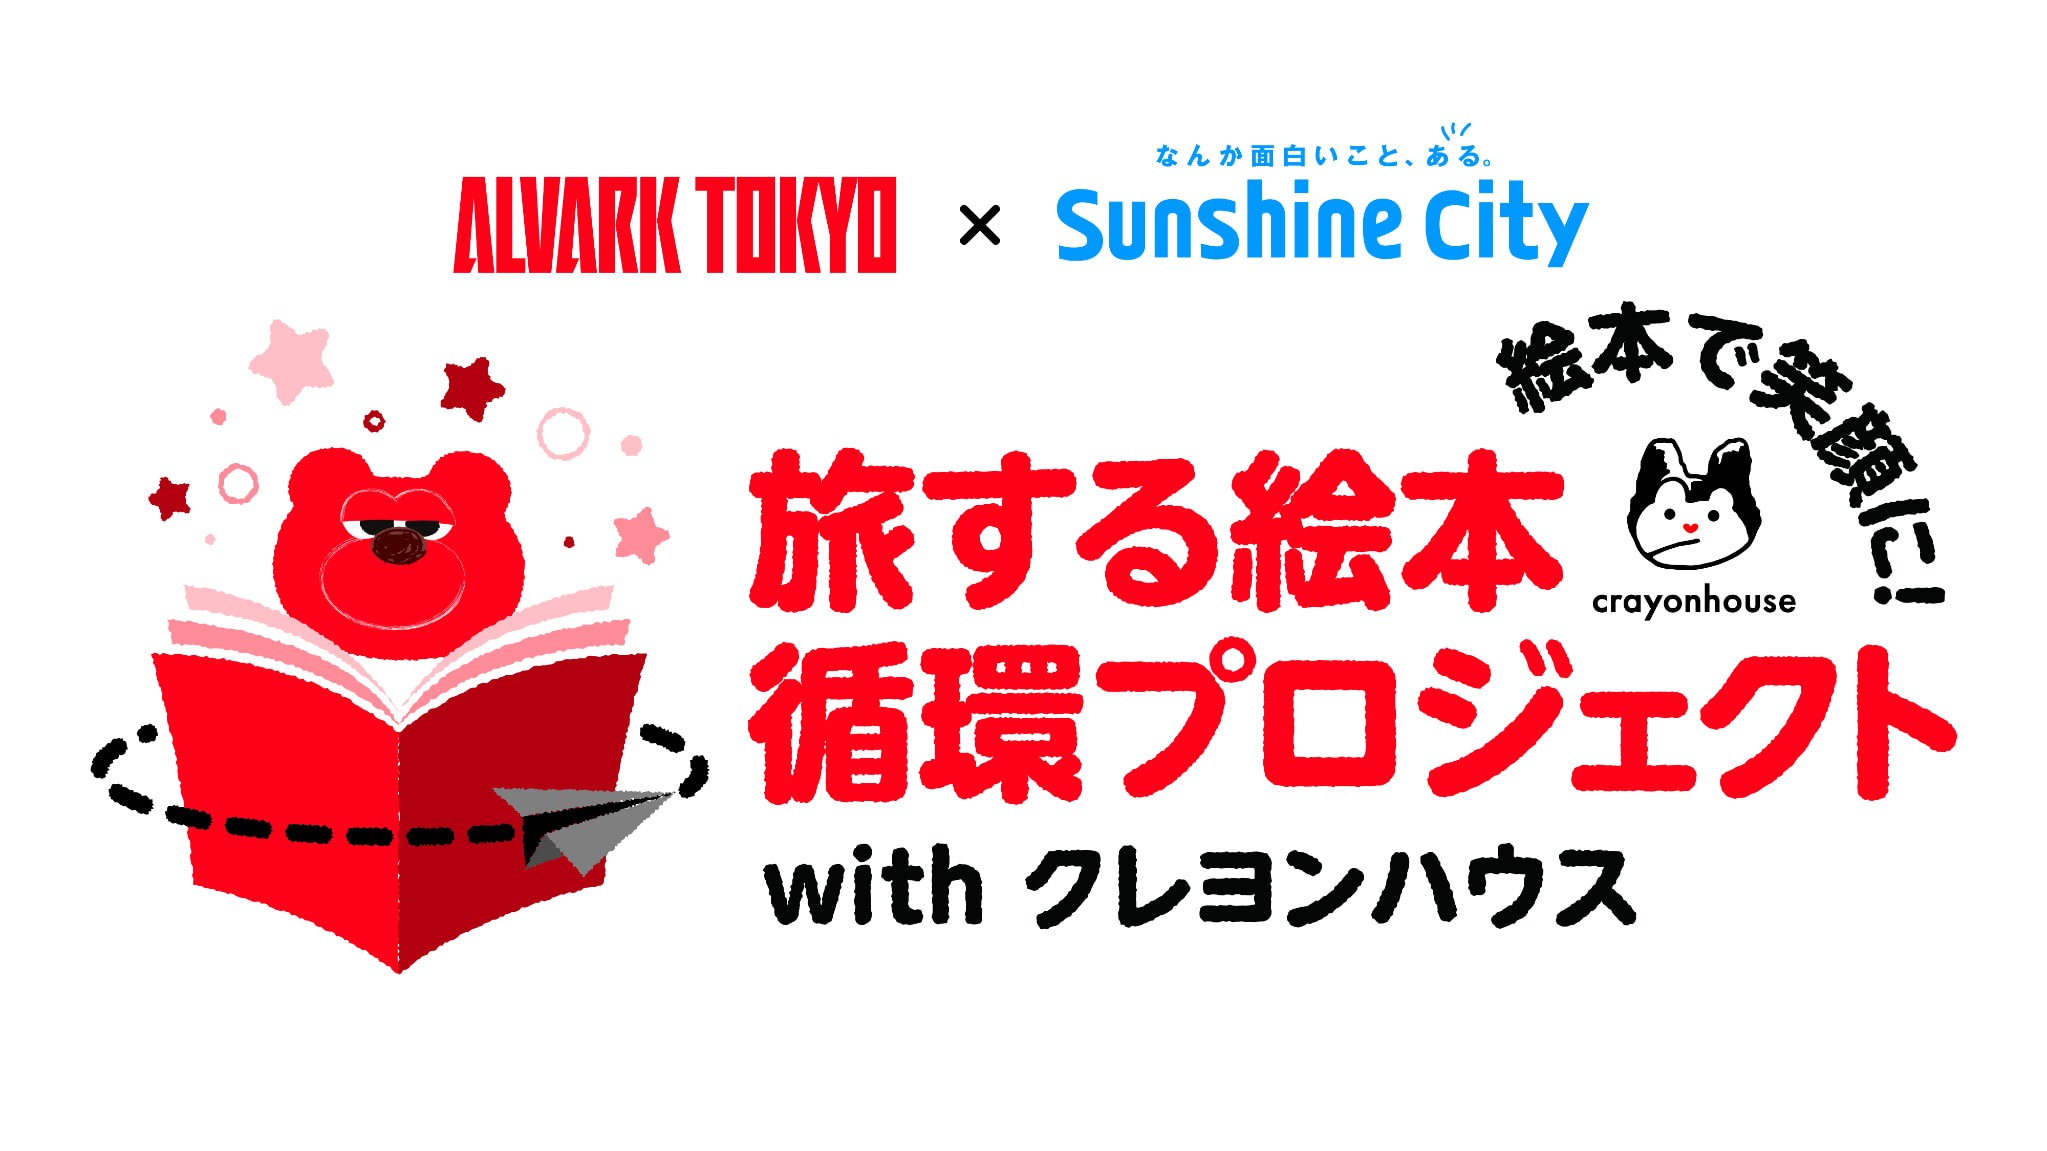 アルバルク東京×サンシャインシティ　旅する絵本循環プロジェクトwith クレヨンハウス